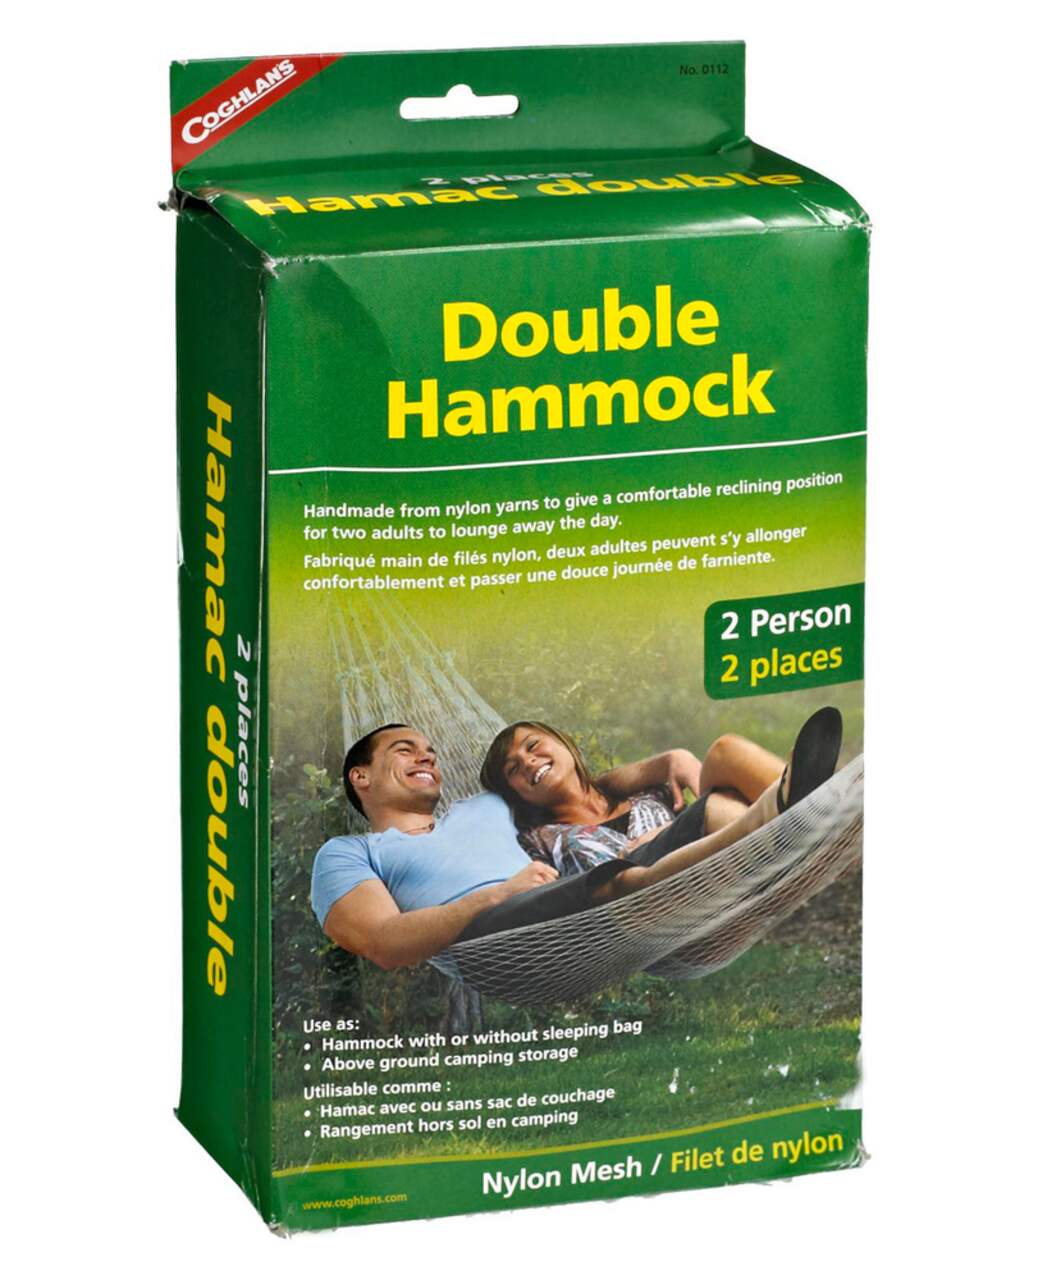 For Living Hammock Hardware